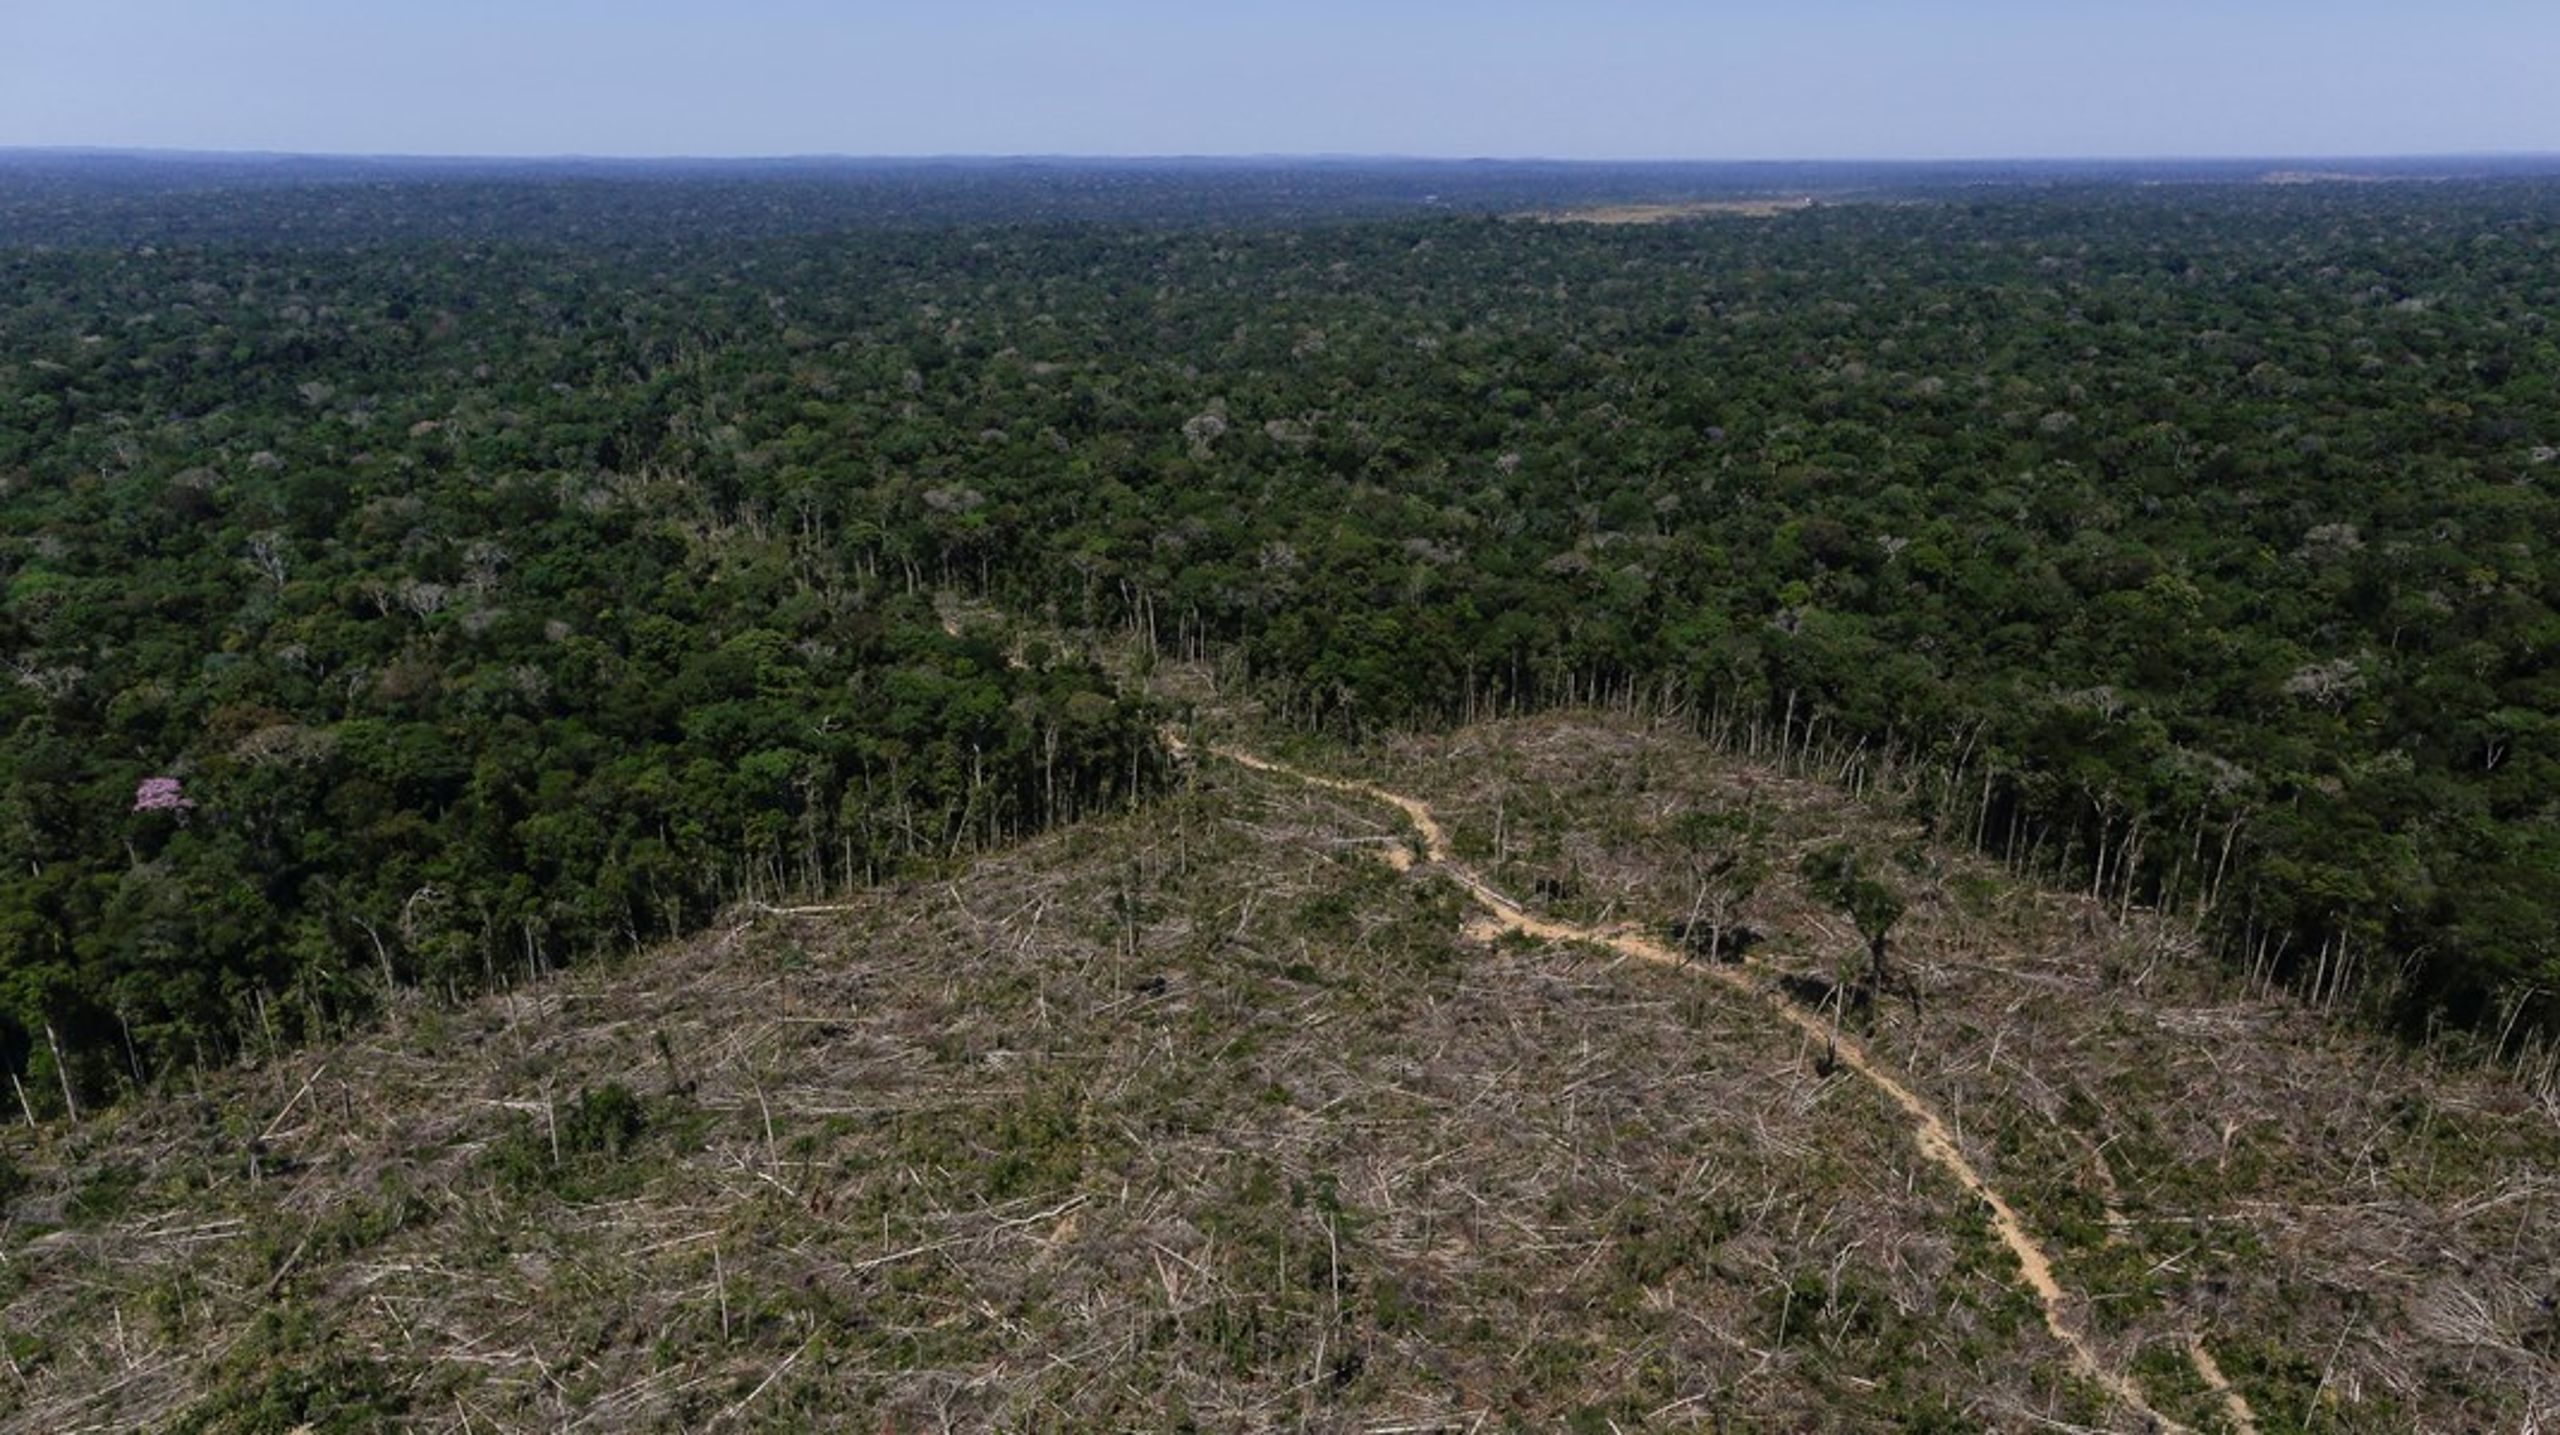 ”At stoppe skovrydning er et godt eksempel på, at klimapolitik, miljøpolitik og udviklingspolitik hænger sammen,” udtaler udviklingsminister&nbsp;Dan Jørgensen (S).&nbsp;